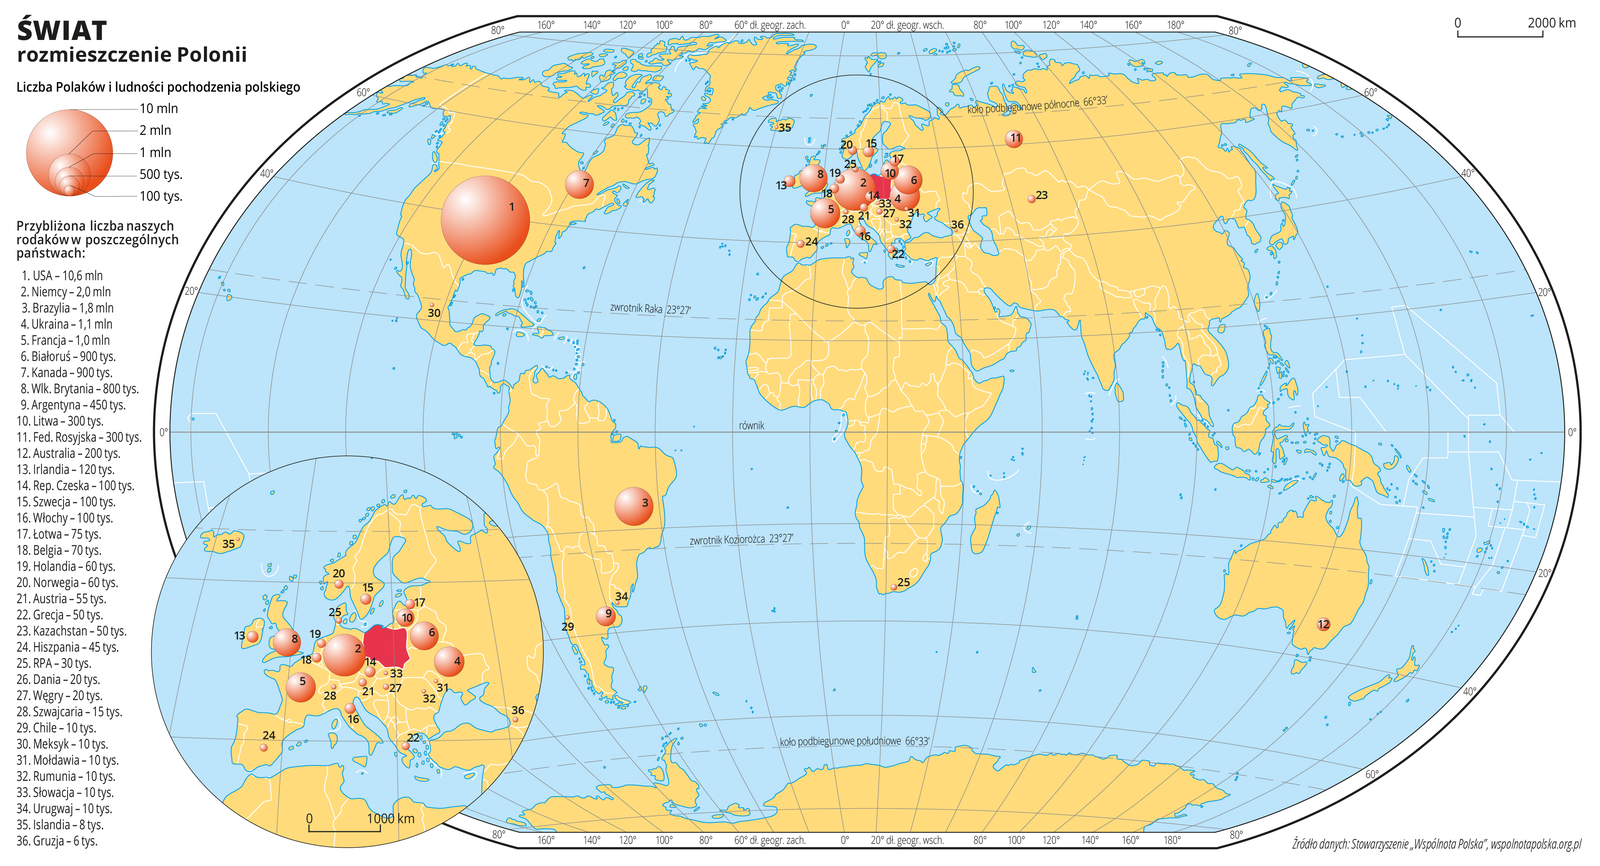 Ilustracja przedstawia mapę świata. Wody zaznaczono kolorem niebieskim. Na mapie za pomocą różnej wielkości kół zaznaczono liczbę Polaków mieszkającą w innych krajach. Największe kółko jest w Stanach Zjednoczonych (około dziesięć milionów Polaków), duża ilość kółek znajduje się w krajach Europejskich – największe kółko na tym obszarze jest w Niemczech – dwa miliony Polaków. W celu lepszej czytelności fragment mapy z obszarem Europy powiększono i umieszczono w lewym dolnym rogu mapy świata. Numerami od jeden do trzydzieści sześć opisano na mapie poszczególne państwa według malejącej liczby ludności pochodzenia polskiego. Na trzecim miejscu pod względem liczby Polonii jest Brazylia – milion osiemset tysięcy osób, a następnie Ukraina – milion sto tysięcy, Francja – milion, Białoruś i Kanada – po dziewięćset tysięcy, Wielka Brytania – osiemset tysięcy, Argentyna – czterysta pięćdziesiąt tysięcy, Litwa i Federacja Rosyjska – po trzysta tysięcy osób, Australia – dwieście tysięcy, Irlandia – sto dwadzieścia tysięcy, Republika Czeska, Szwecja, Włochy – po sto tysięcy osób. Kraje, w których mieszka między pięćdziesiąt a siedemdziesiąt pięć tysięcy Polaków to (zaczynając od największej liczebności) Łotwa, Belgia, Holandia, Norwegia, Austria, Grecja, Kazachstan. Kraje, w których mieszka poniżej pięćdziesięciu tysięcy Polonii – Hiszpania, RPA, Dania, Węgry, Szwajcaria, Chile, Meksyk, Mołdawia, Rumunia, Słowacja, Urugwaj, Islandia, Gruzja. Mapa pokryta jest równoleżnikami i południkami. Dookoła mapy w białej ramce opisano współrzędne geograficzne co dwadzieścia stopni. Po lewej stronie mapy narysowano koła różnej wielkości i objaśniono ich wielkość w zależności od liczby ludności pochodzenia polskiego. Wypisano wszystkie trzydzieści sześć państw, w których mieszka ludność pochodzenia polskiego wraz z numerami, którymi oznaczono je na mapie i liczbą ludności pochodzenia polskiego.